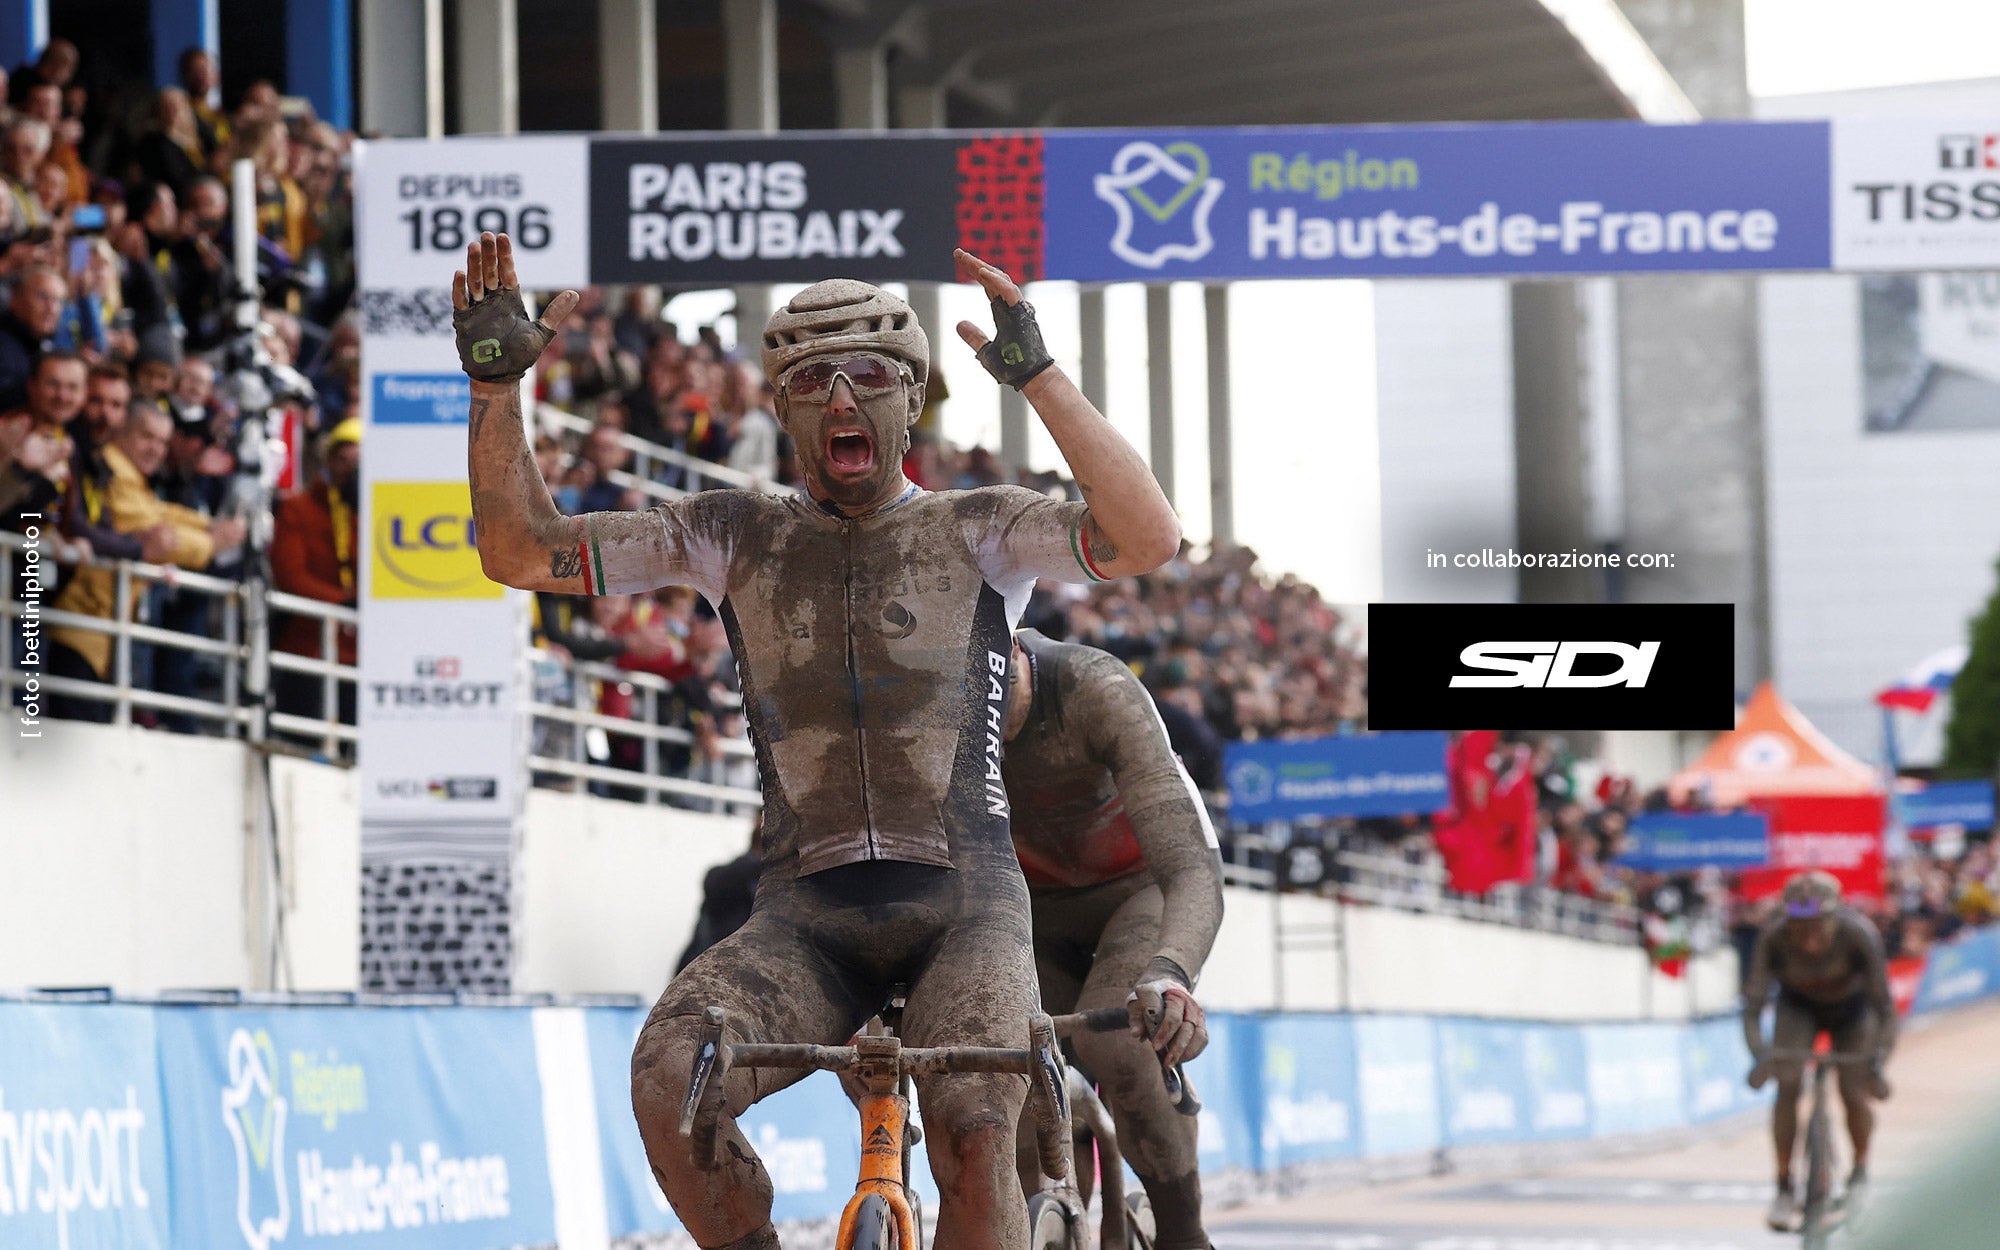 Sonny Colbrelli vince la 118ma edizione della Parigi-Roubaix nel 2021